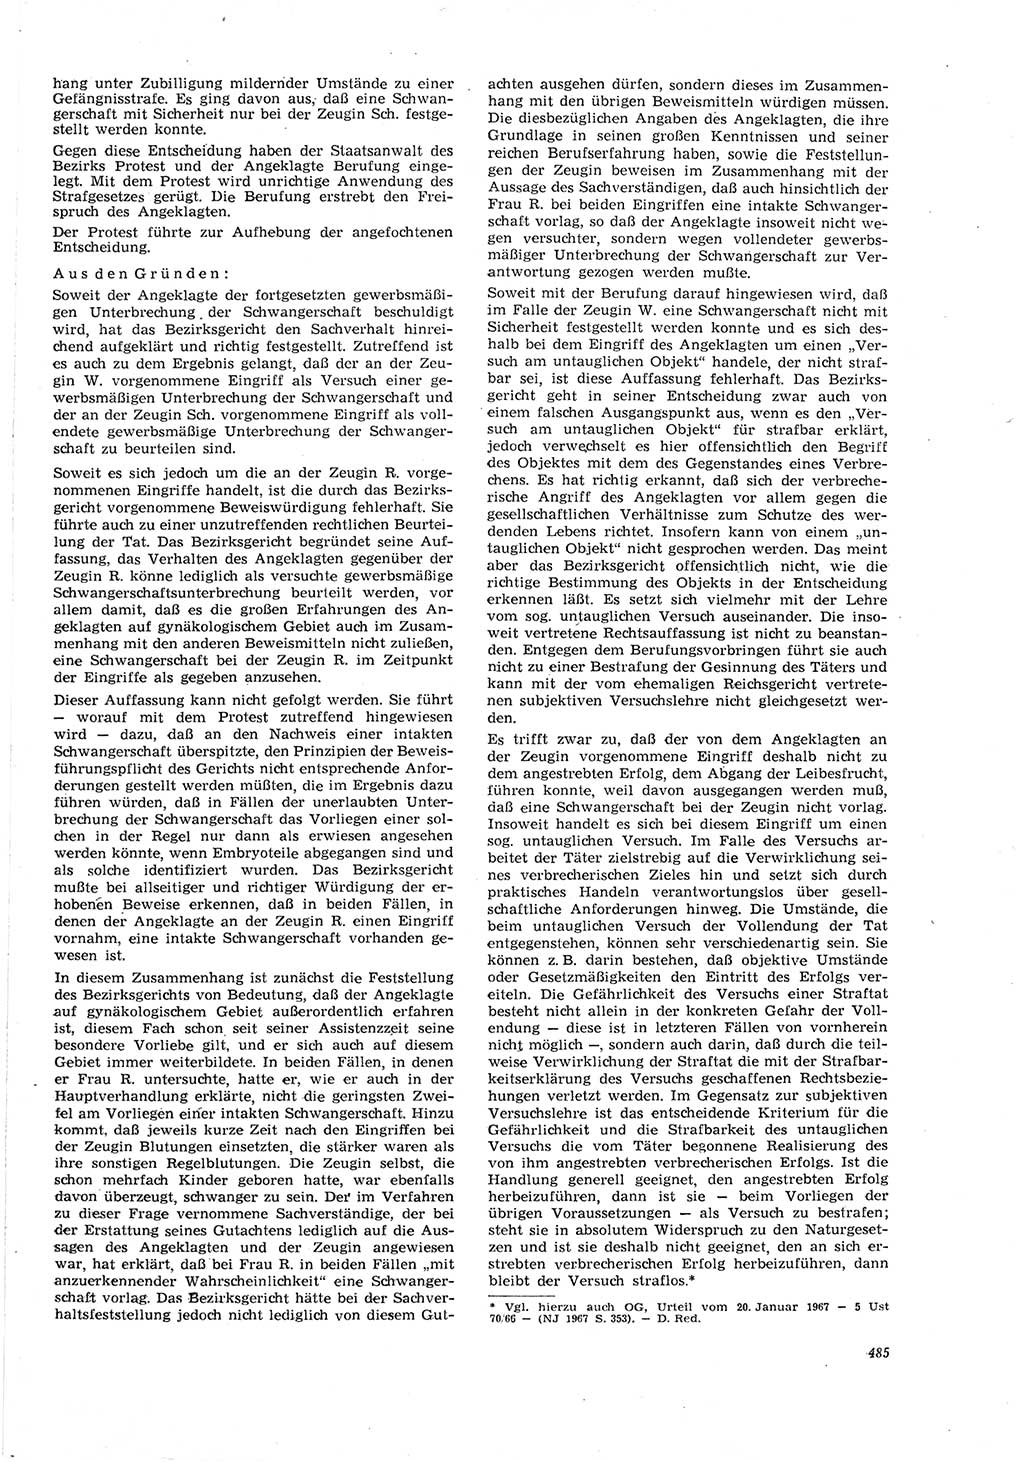 Neue Justiz (NJ), Zeitschrift für Recht und Rechtswissenschaft [Deutsche Demokratische Republik (DDR)], 21. Jahrgang 1967, Seite 485 (NJ DDR 1967, S. 485)